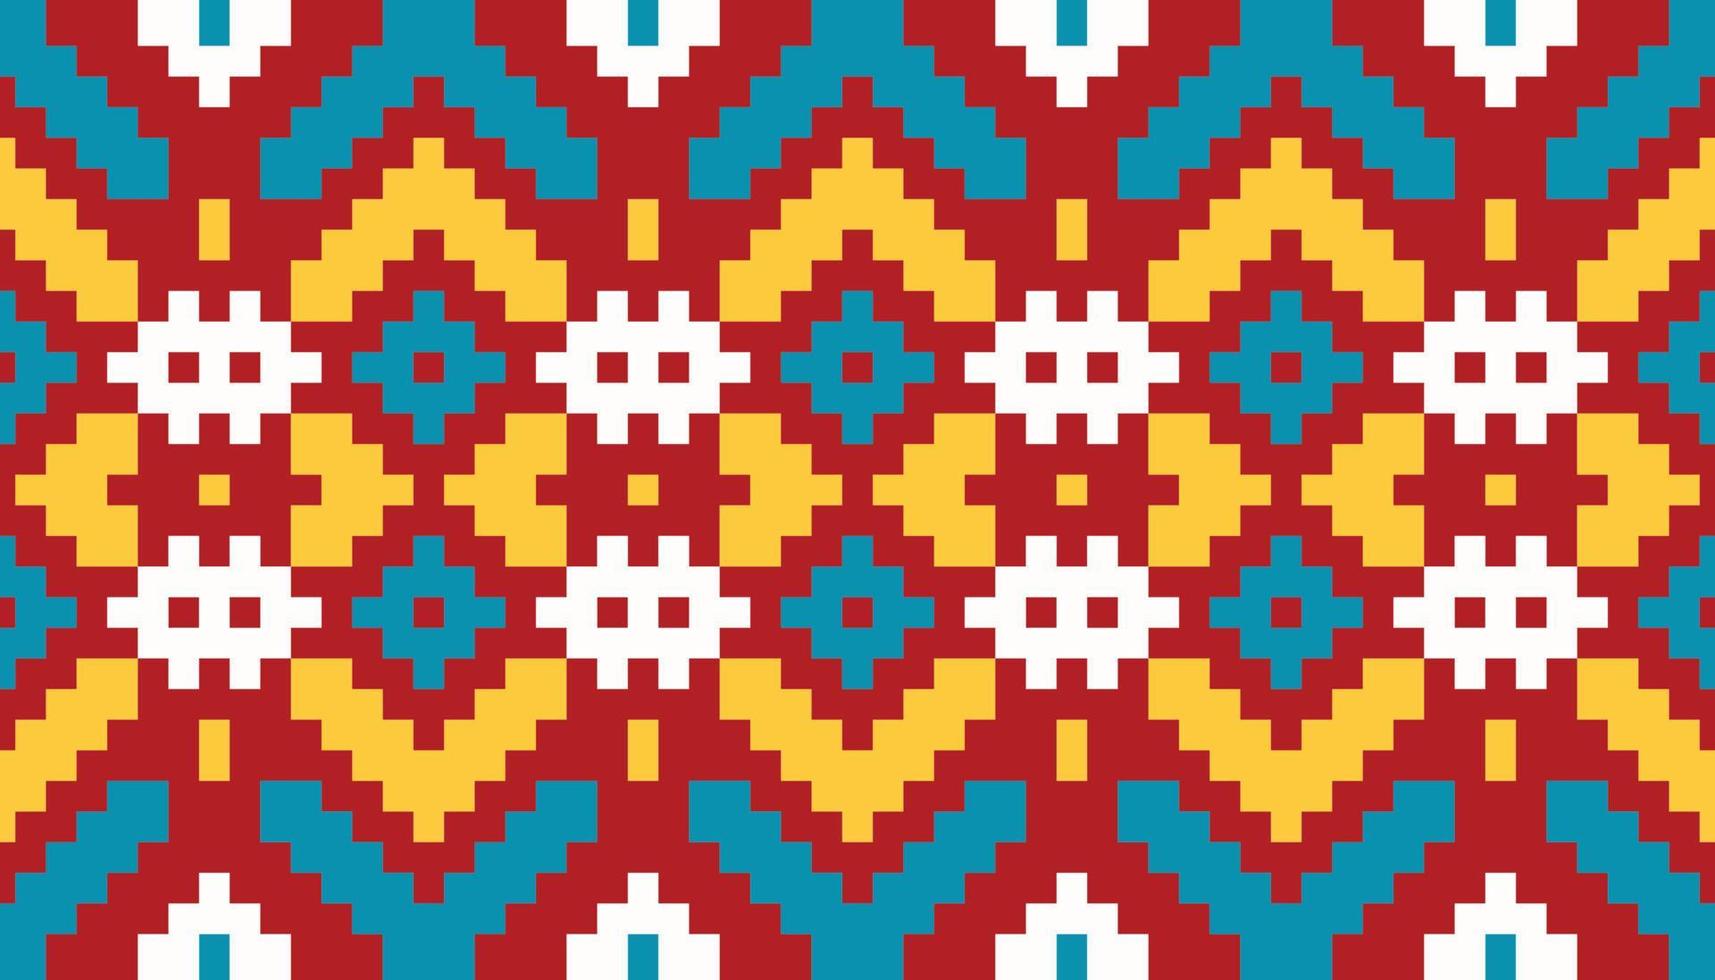 afrikaanse patronen stof ontwerp voor prints achtergrond behang textuur jurk mode stof papier tapijt textielindustrie vector